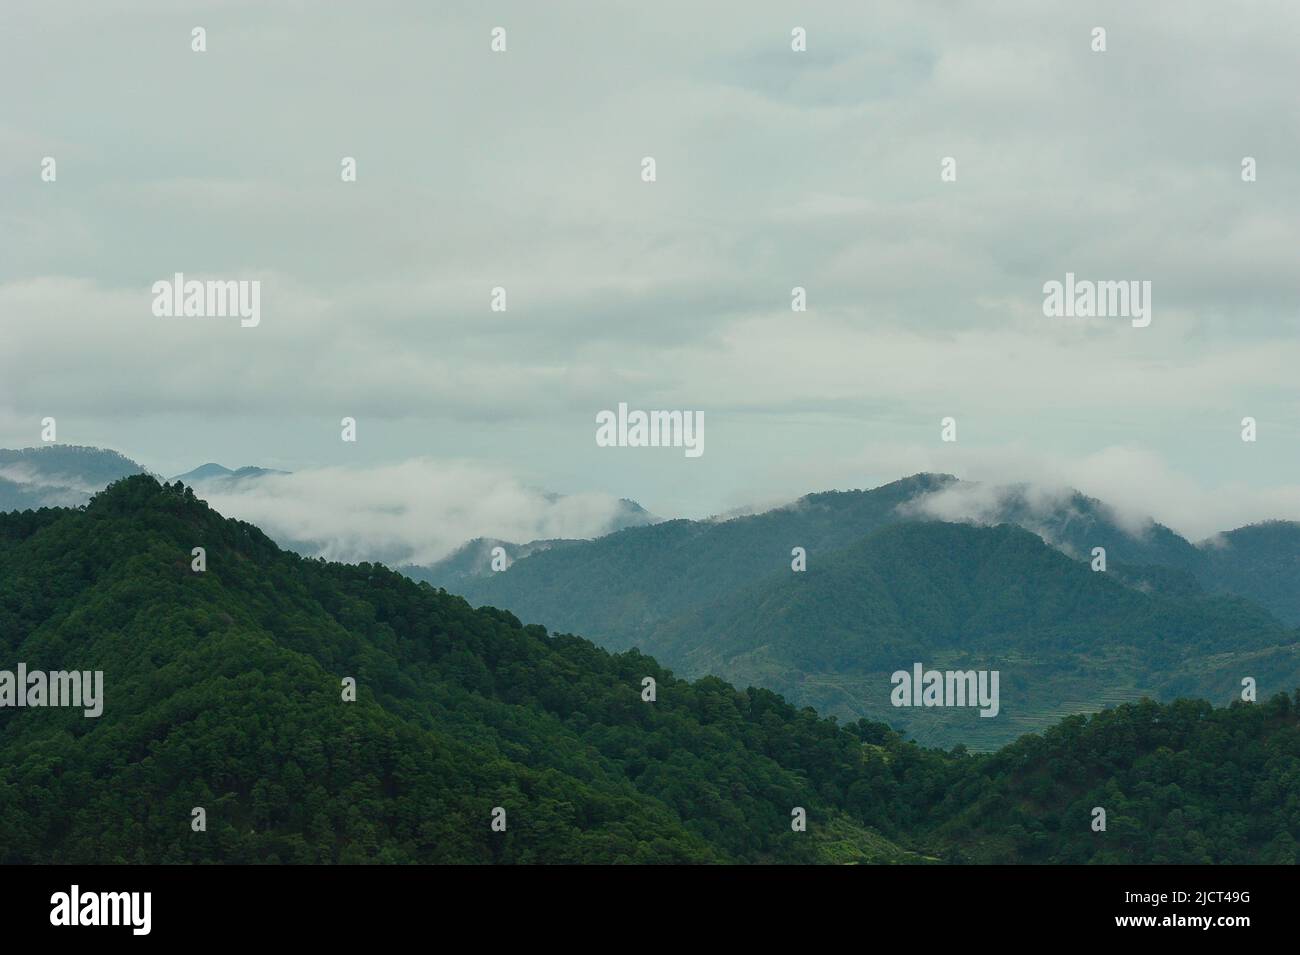 Mountain Province, Philippinen: Majestätische Berglandschaft in Sagada, eingehüllt in Nebel an einem düsteren Tag. Horizontaler Kopierbereich mit Naturmotiven. Stockfoto